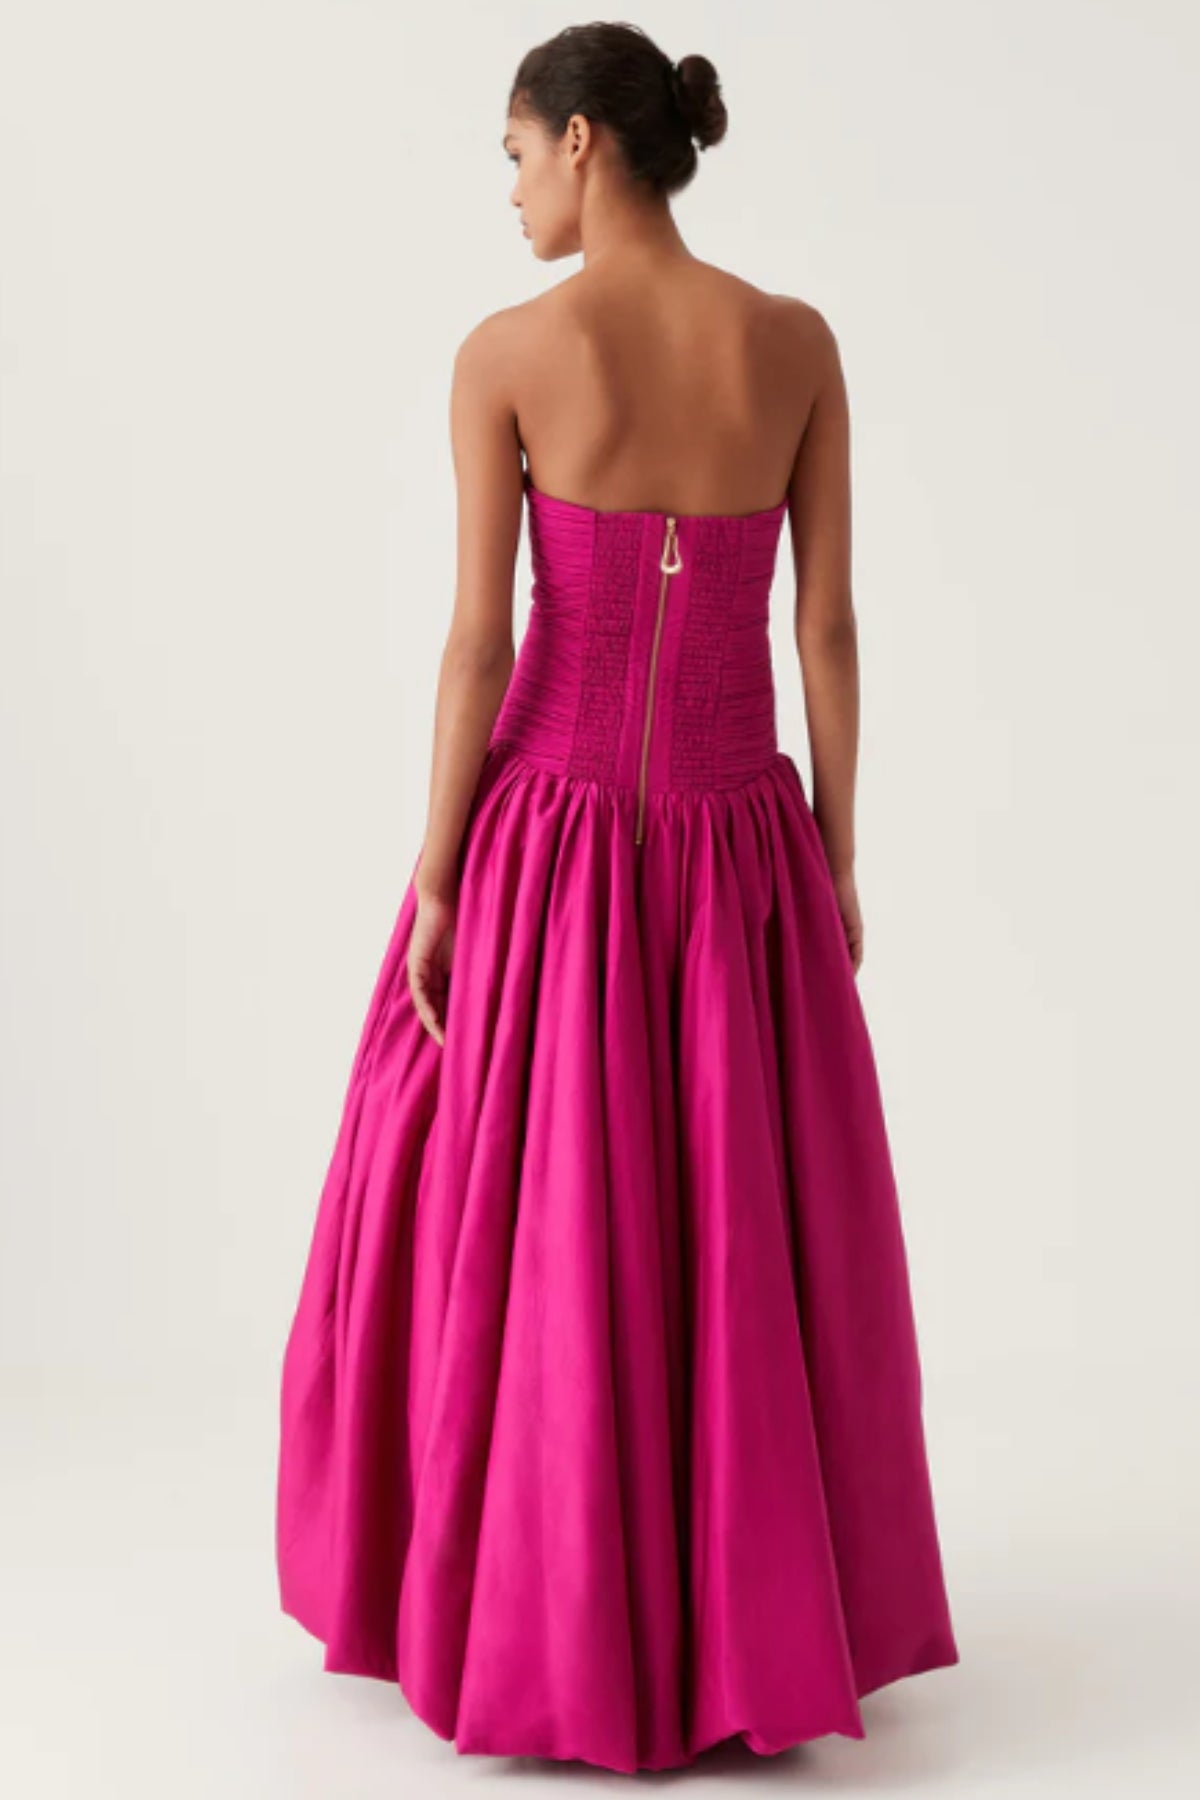 AJE Violette Bubble Dress (Pink)